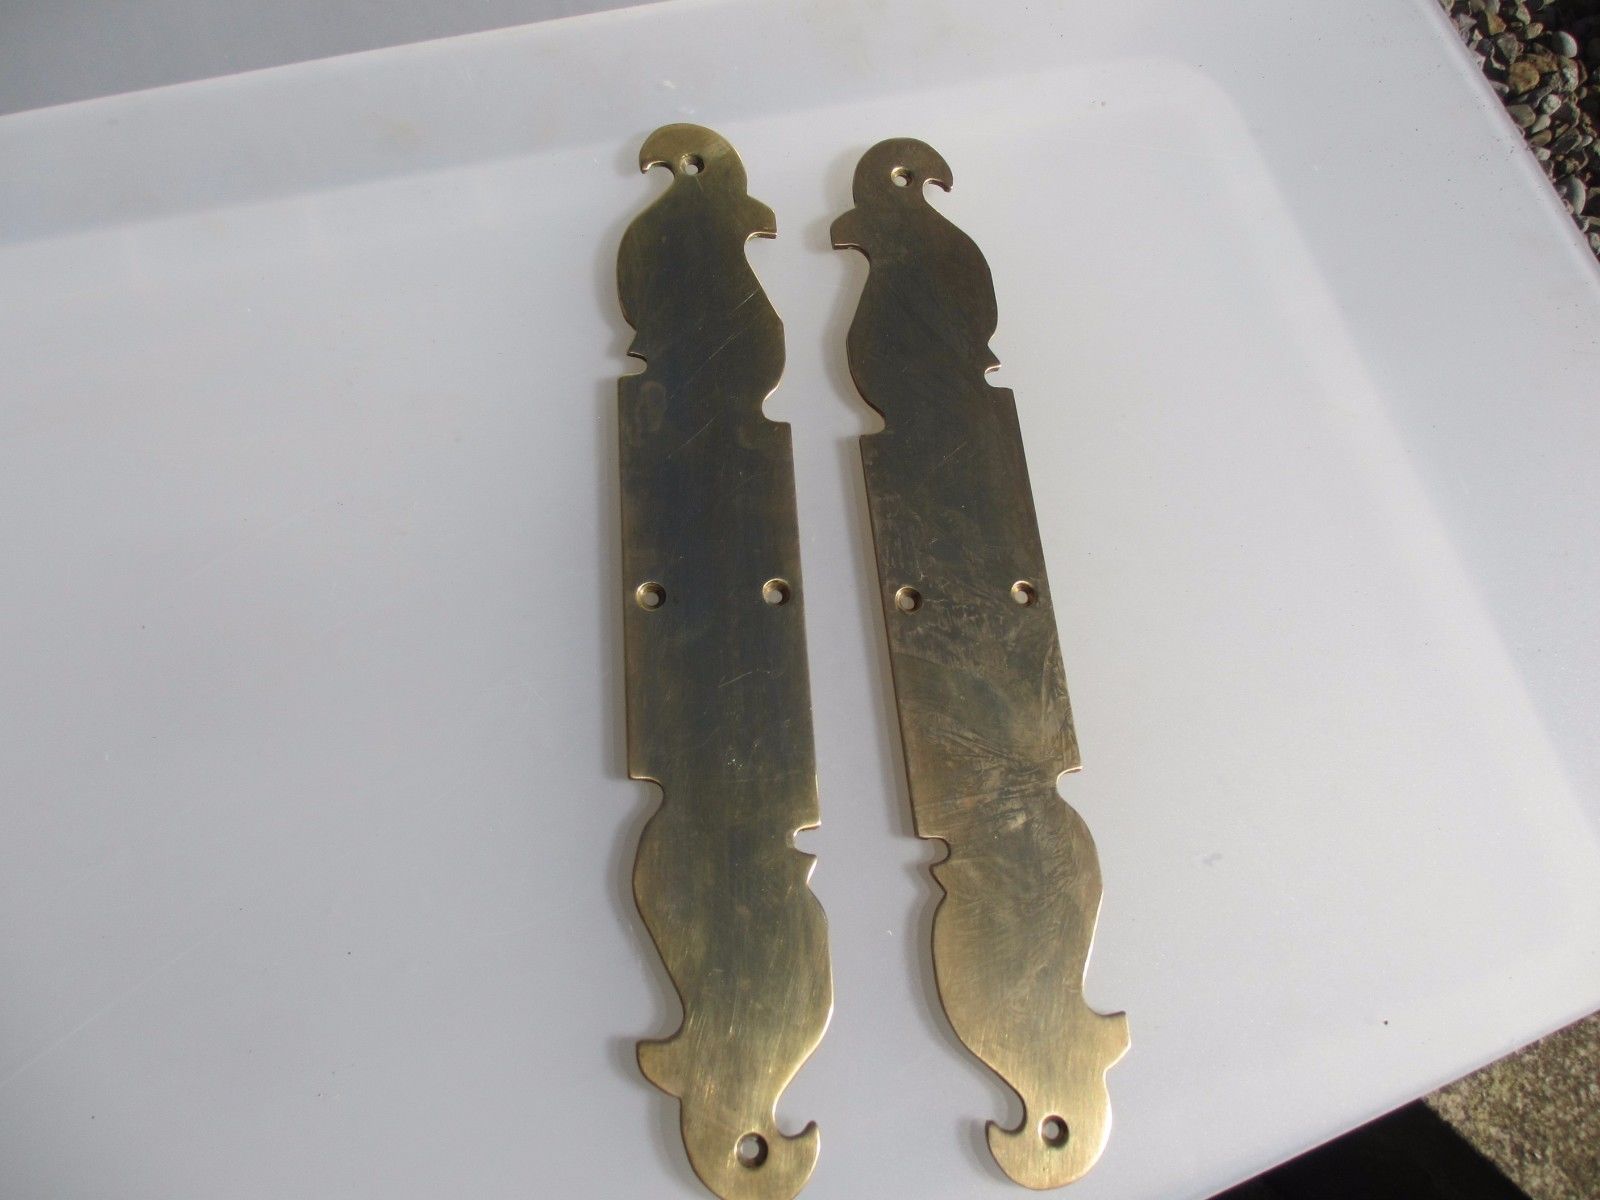 Vintage Brass Finger Plates Push Door Handles Gothic Art Nouveau Style Pair 16"H